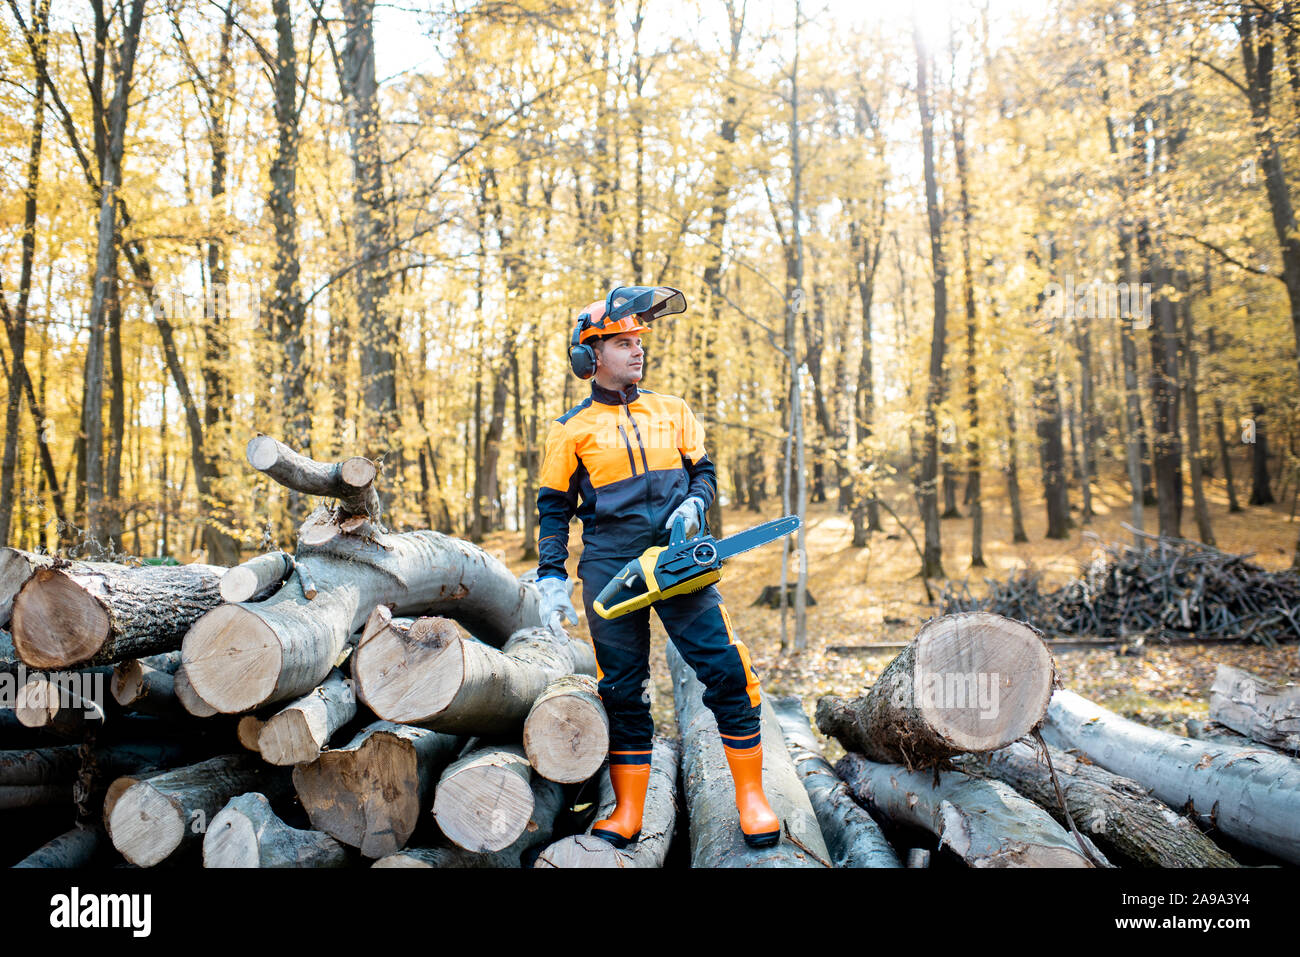 Ritratto di un professionista lumberjack in indumenti da lavoro protettiva in piedi con una motosega su una pila di registri nella foresta Foto Stock